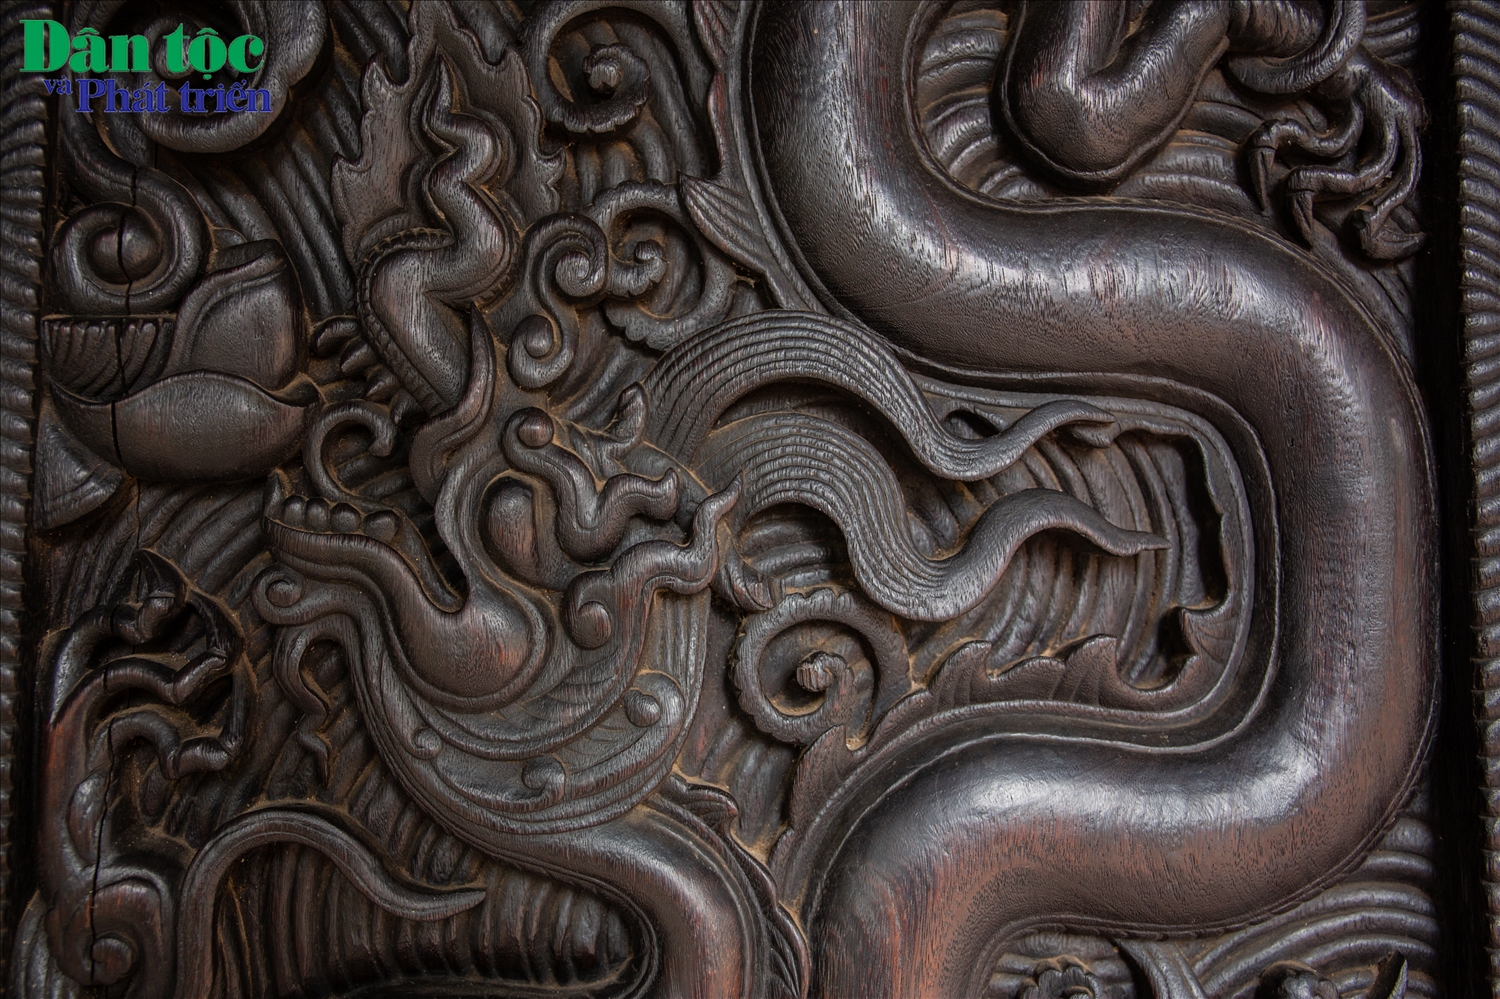    Qua bộ cánh cửa đã giúp chúng ta hiểu hơn về kiến trúc, mỹ thuật và nghệ thuật điêu khắc thời Trần. Đề tài hoa văn trang trí trên cánh cửa là cơ sở để ta hiểu hơn về nghệ thuật tạo hình, tư duy thẩm mỹ, lịch sử văn hoá, thủ công mỹ nghệ dưới triều đại nhà Trần. Từ đó phản ánh về sự hưng thịnh của Phật giáo thời Trần.